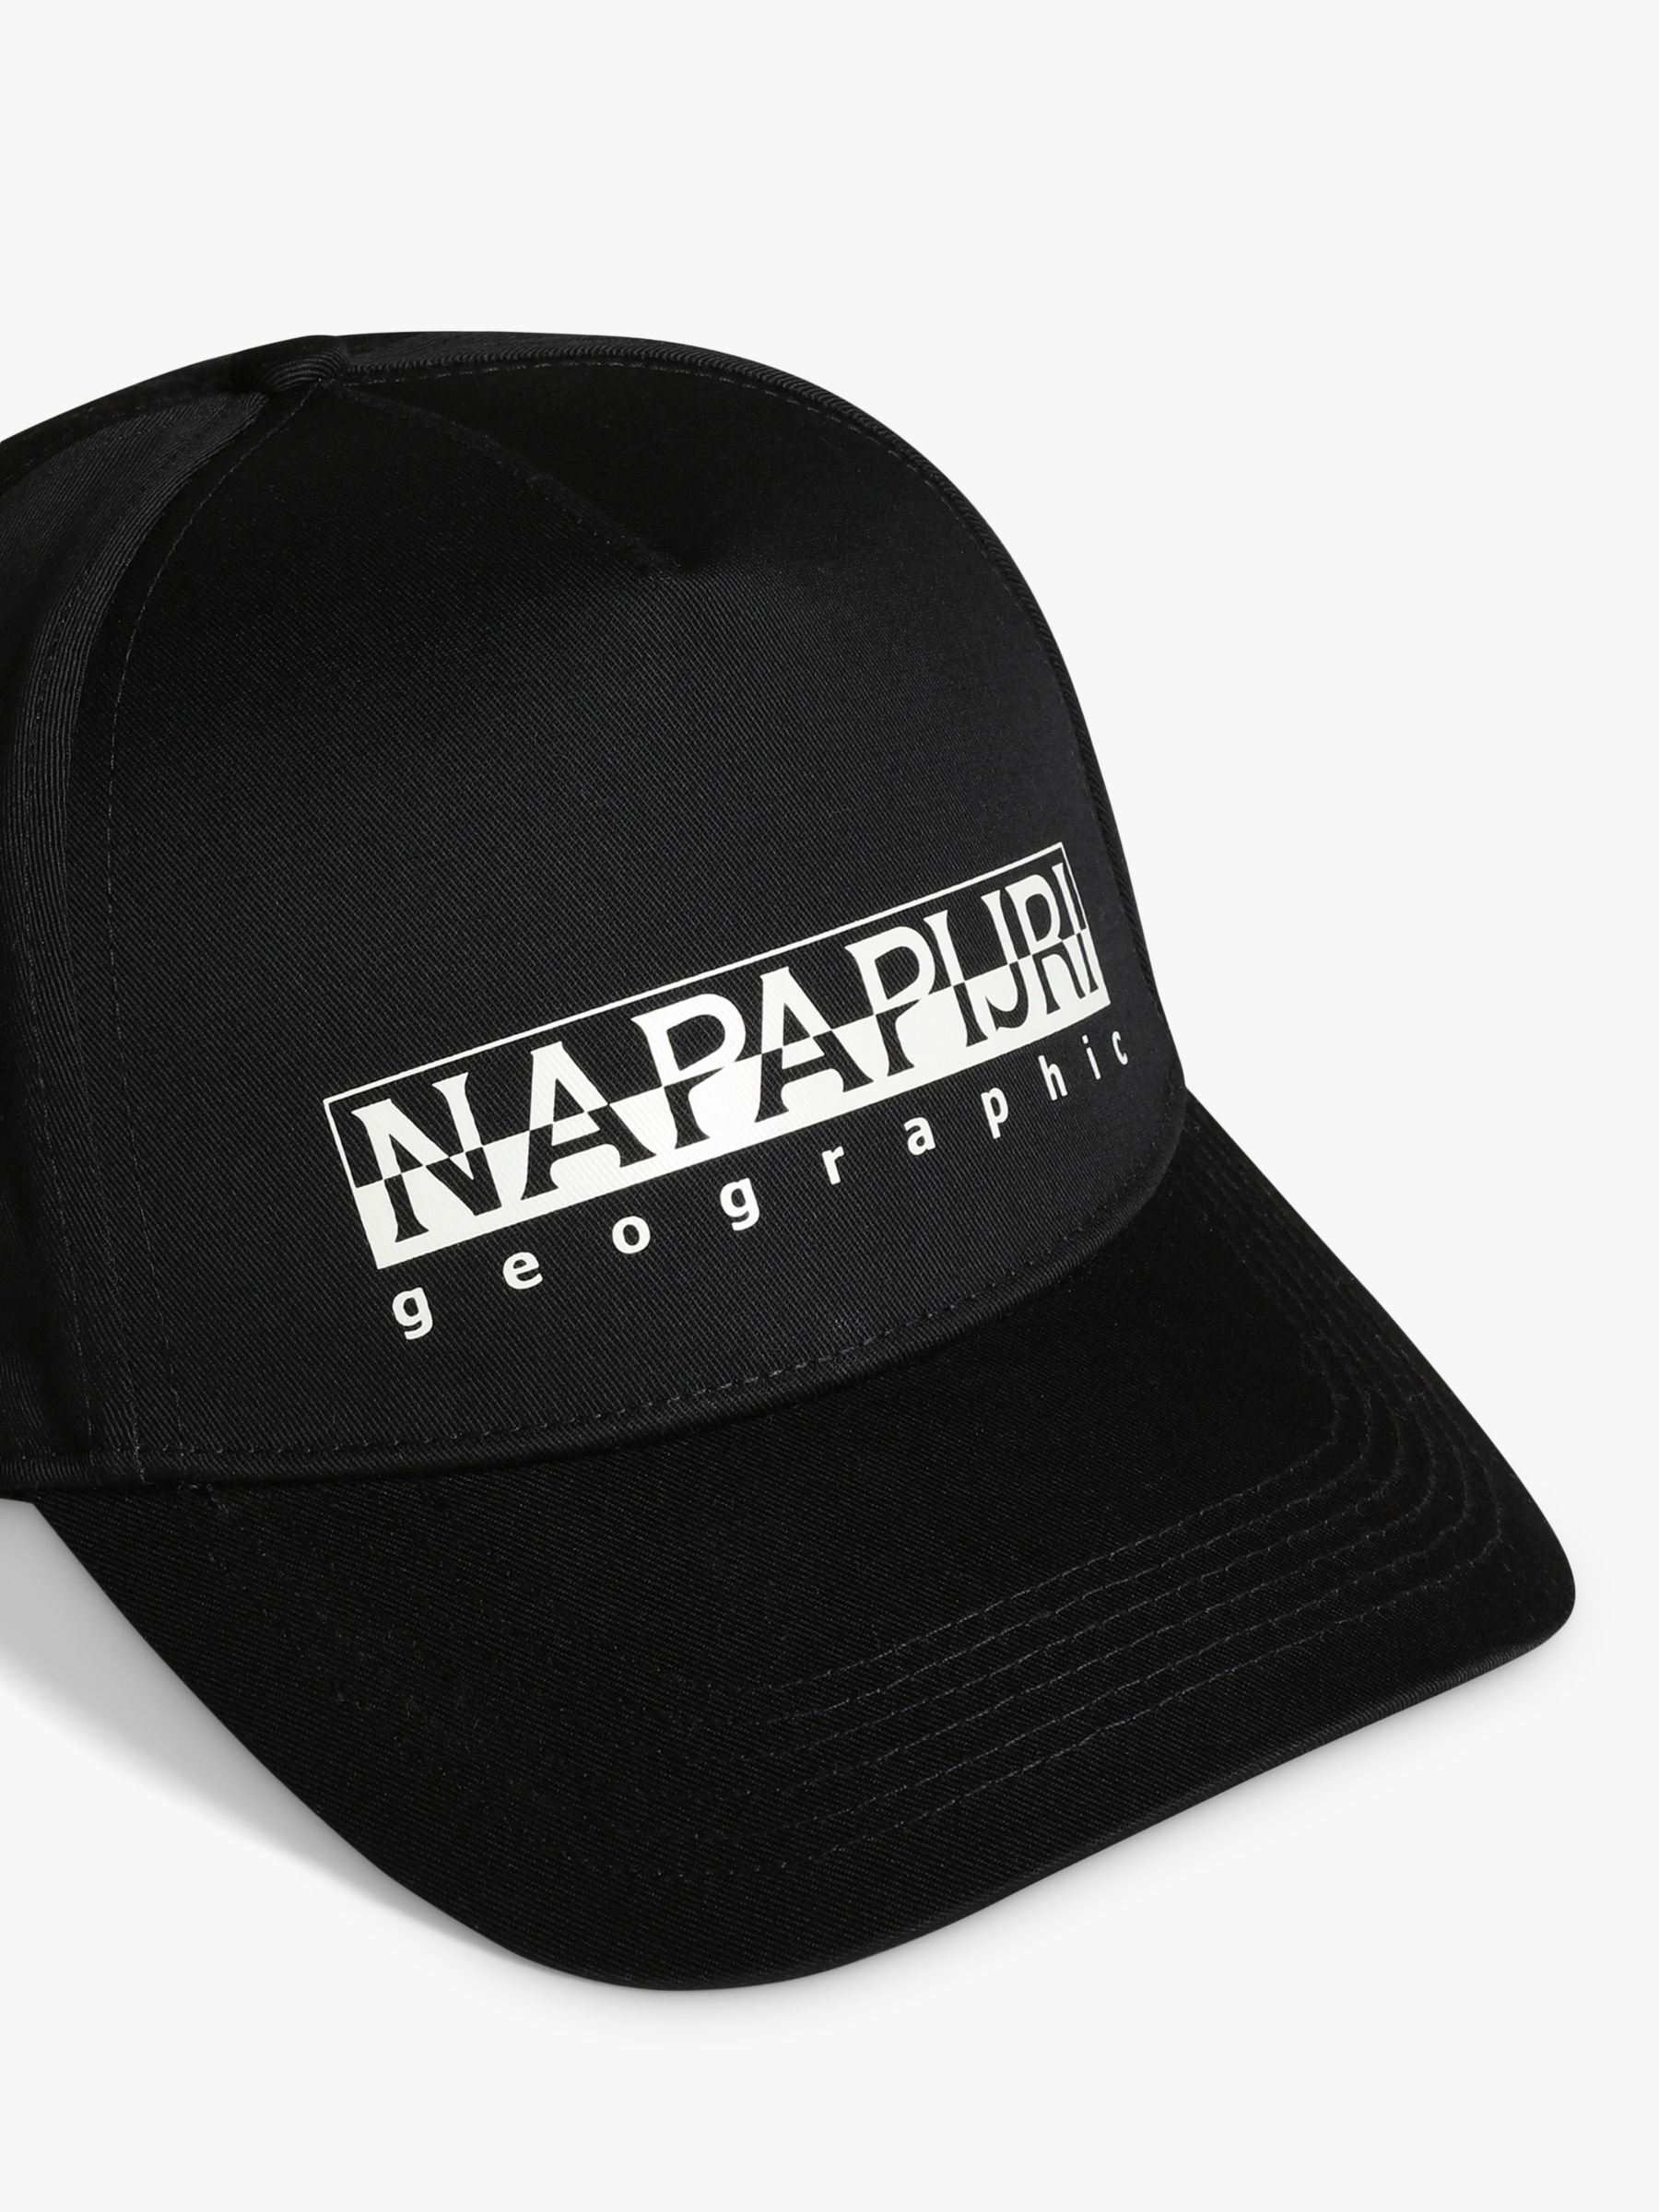 Buy Napapijri F-Box Baseball Cap Online at johnlewis.com